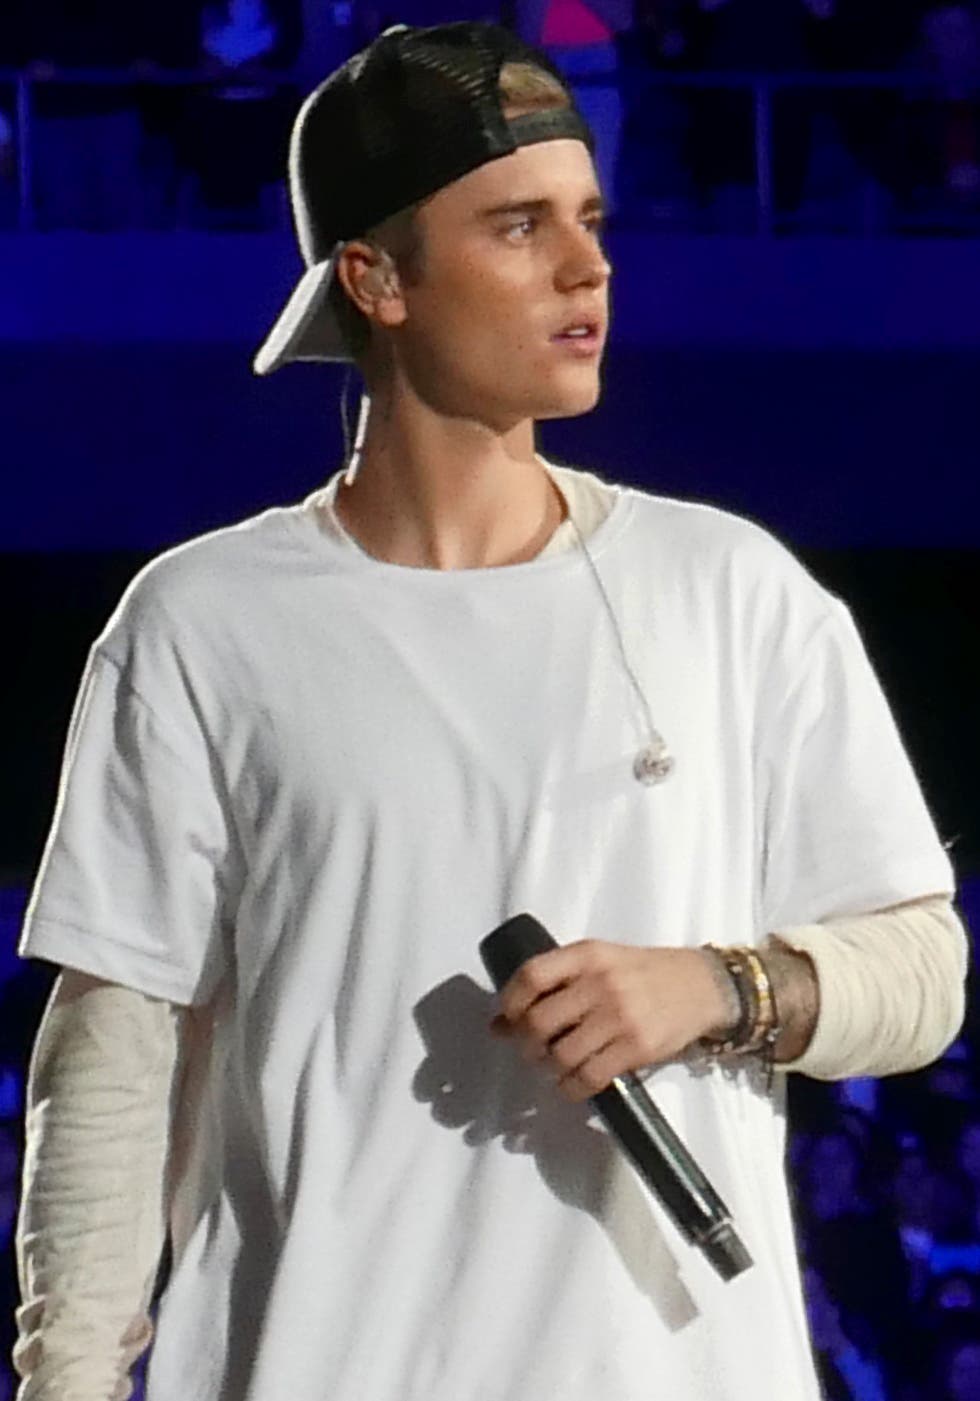 Justin Bieber da el salto al metaverso con un concierto el 18 de noviembre